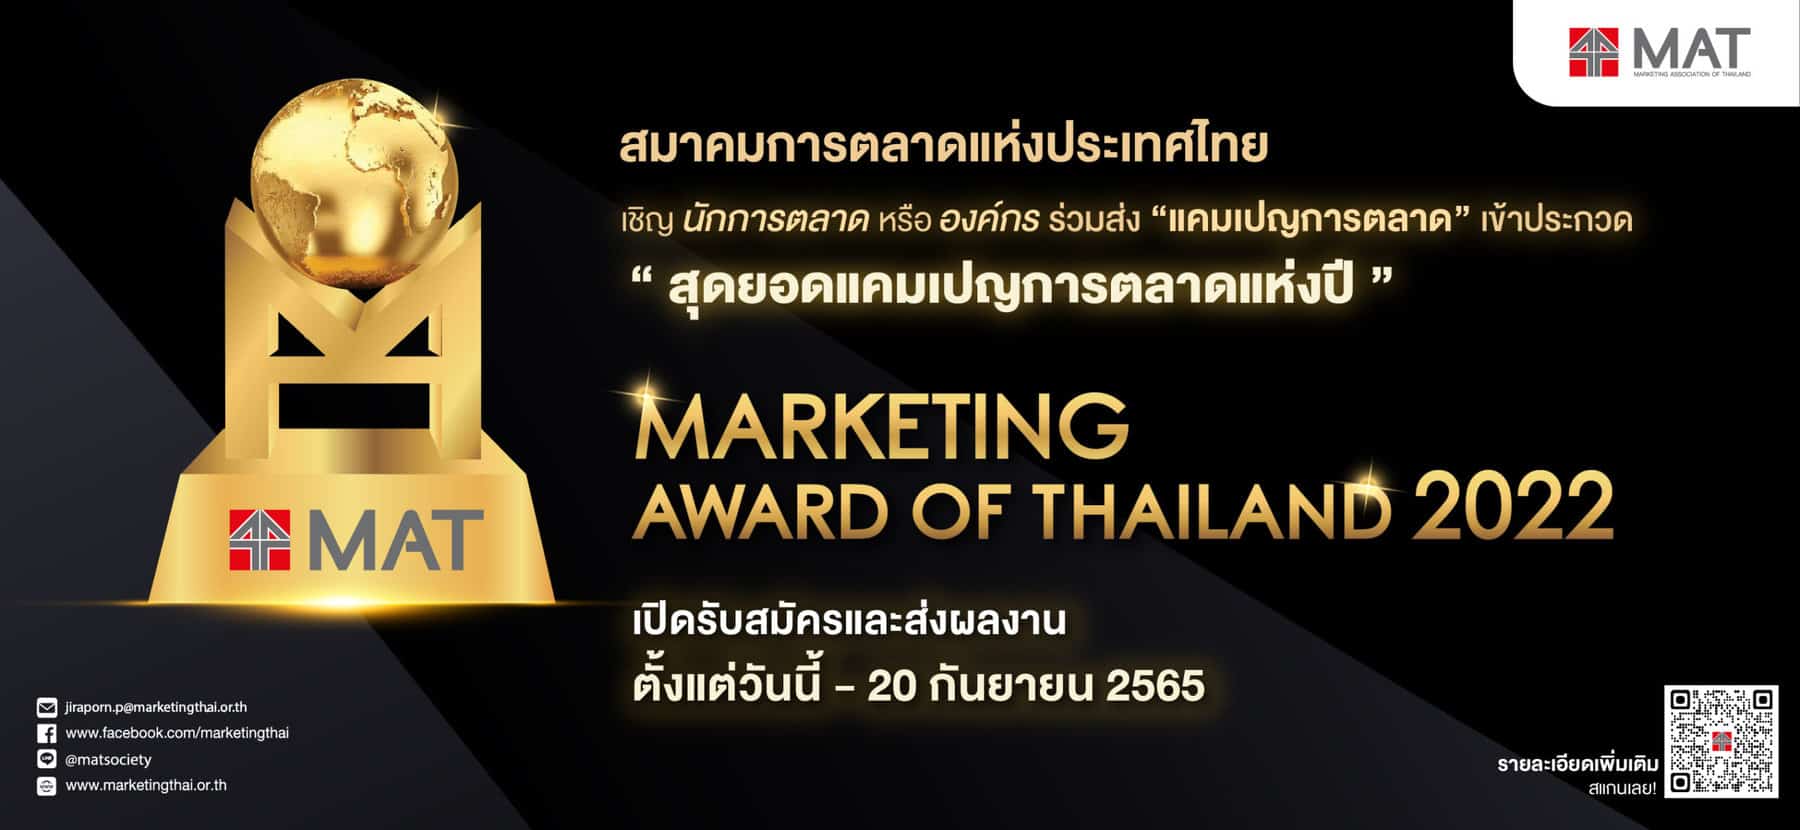 ถึงเวลาเฉิดฉาย สมาคมการตลาดเปิดรับสมัครผู้ที่สนใจประกวด ‘Marketing Award of Thailand 2022’